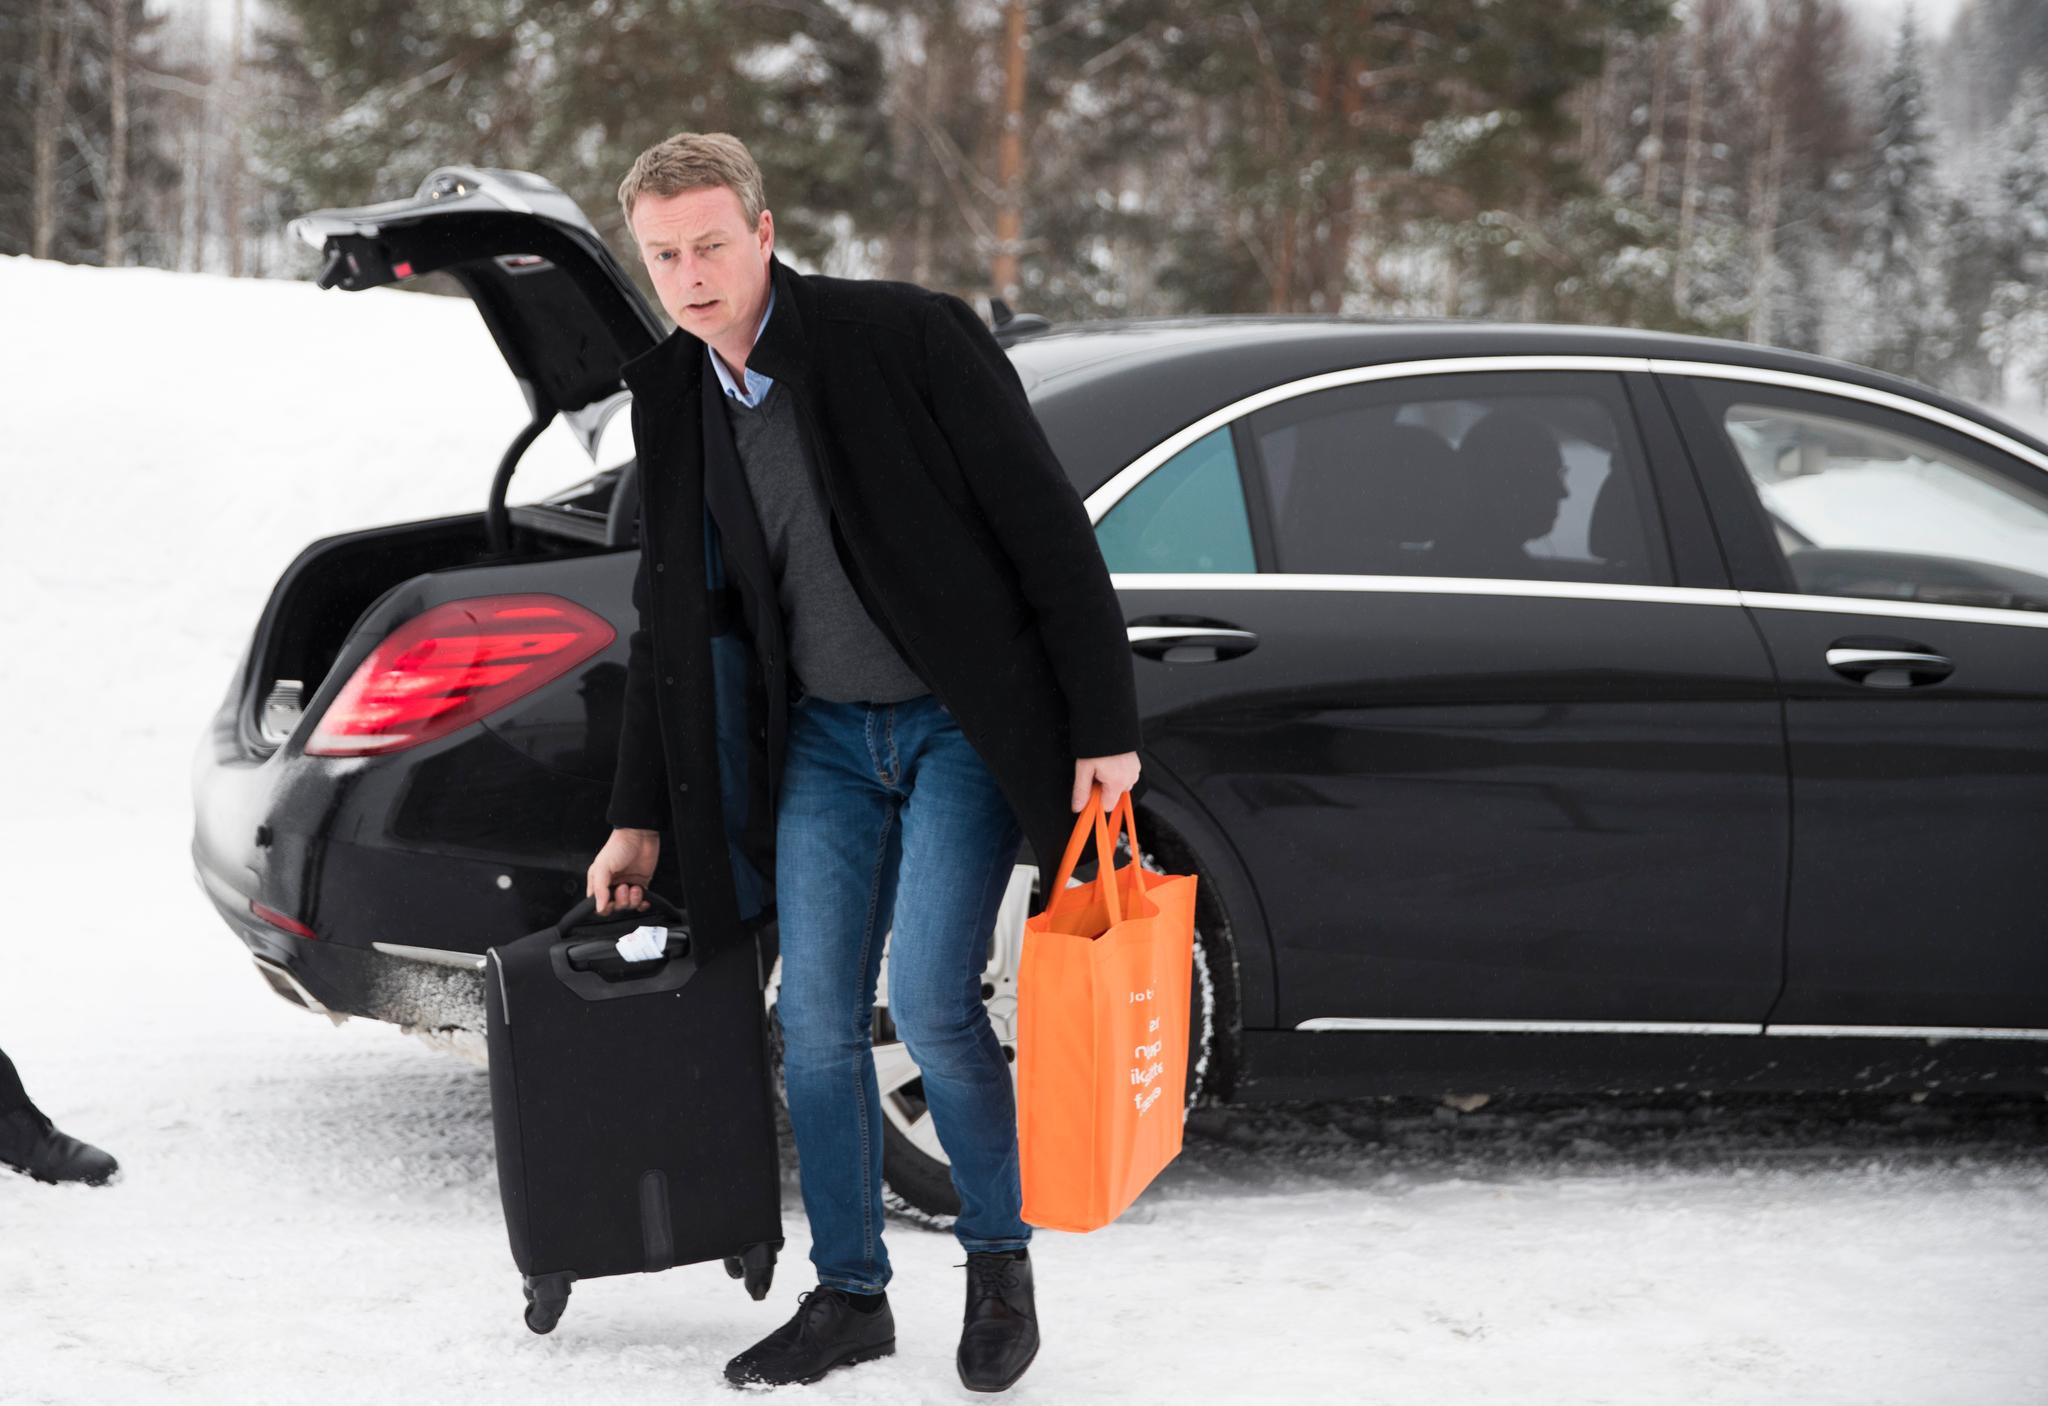 Olje- og energiminister Terje Søviknes (Frp) har mottatt trusler på grunn av Acer-saken. 
Foto: Berit Roald / NTB scanpix